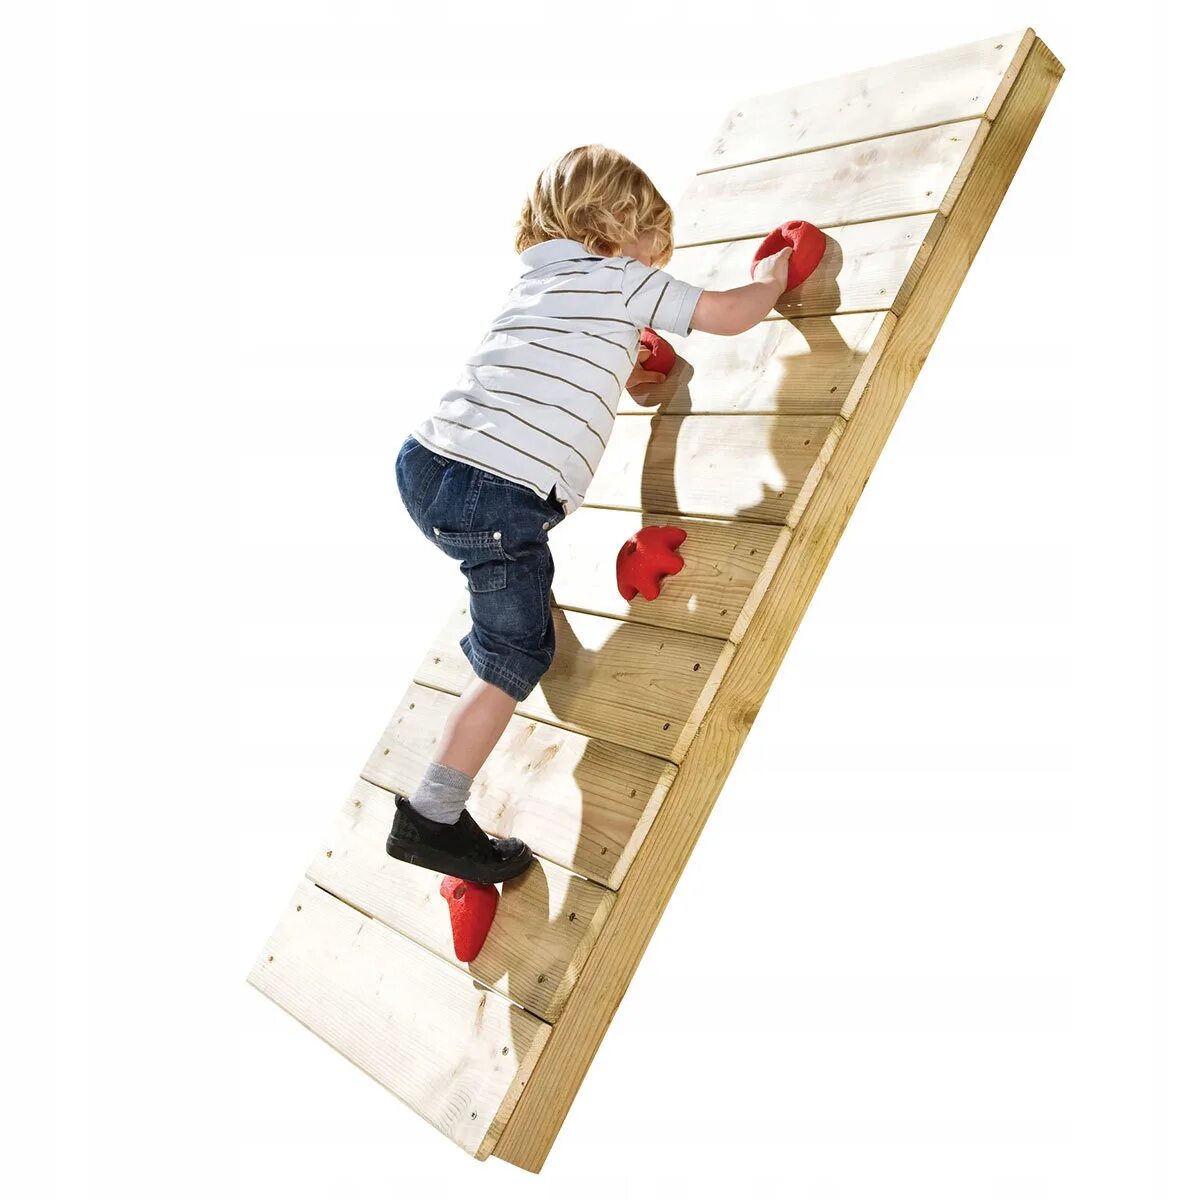 Лестница с зацепами купить. Лестница для детей. Лазалки для детей на дачу. Горка для скалолазания. Лестница лазалка для детей.